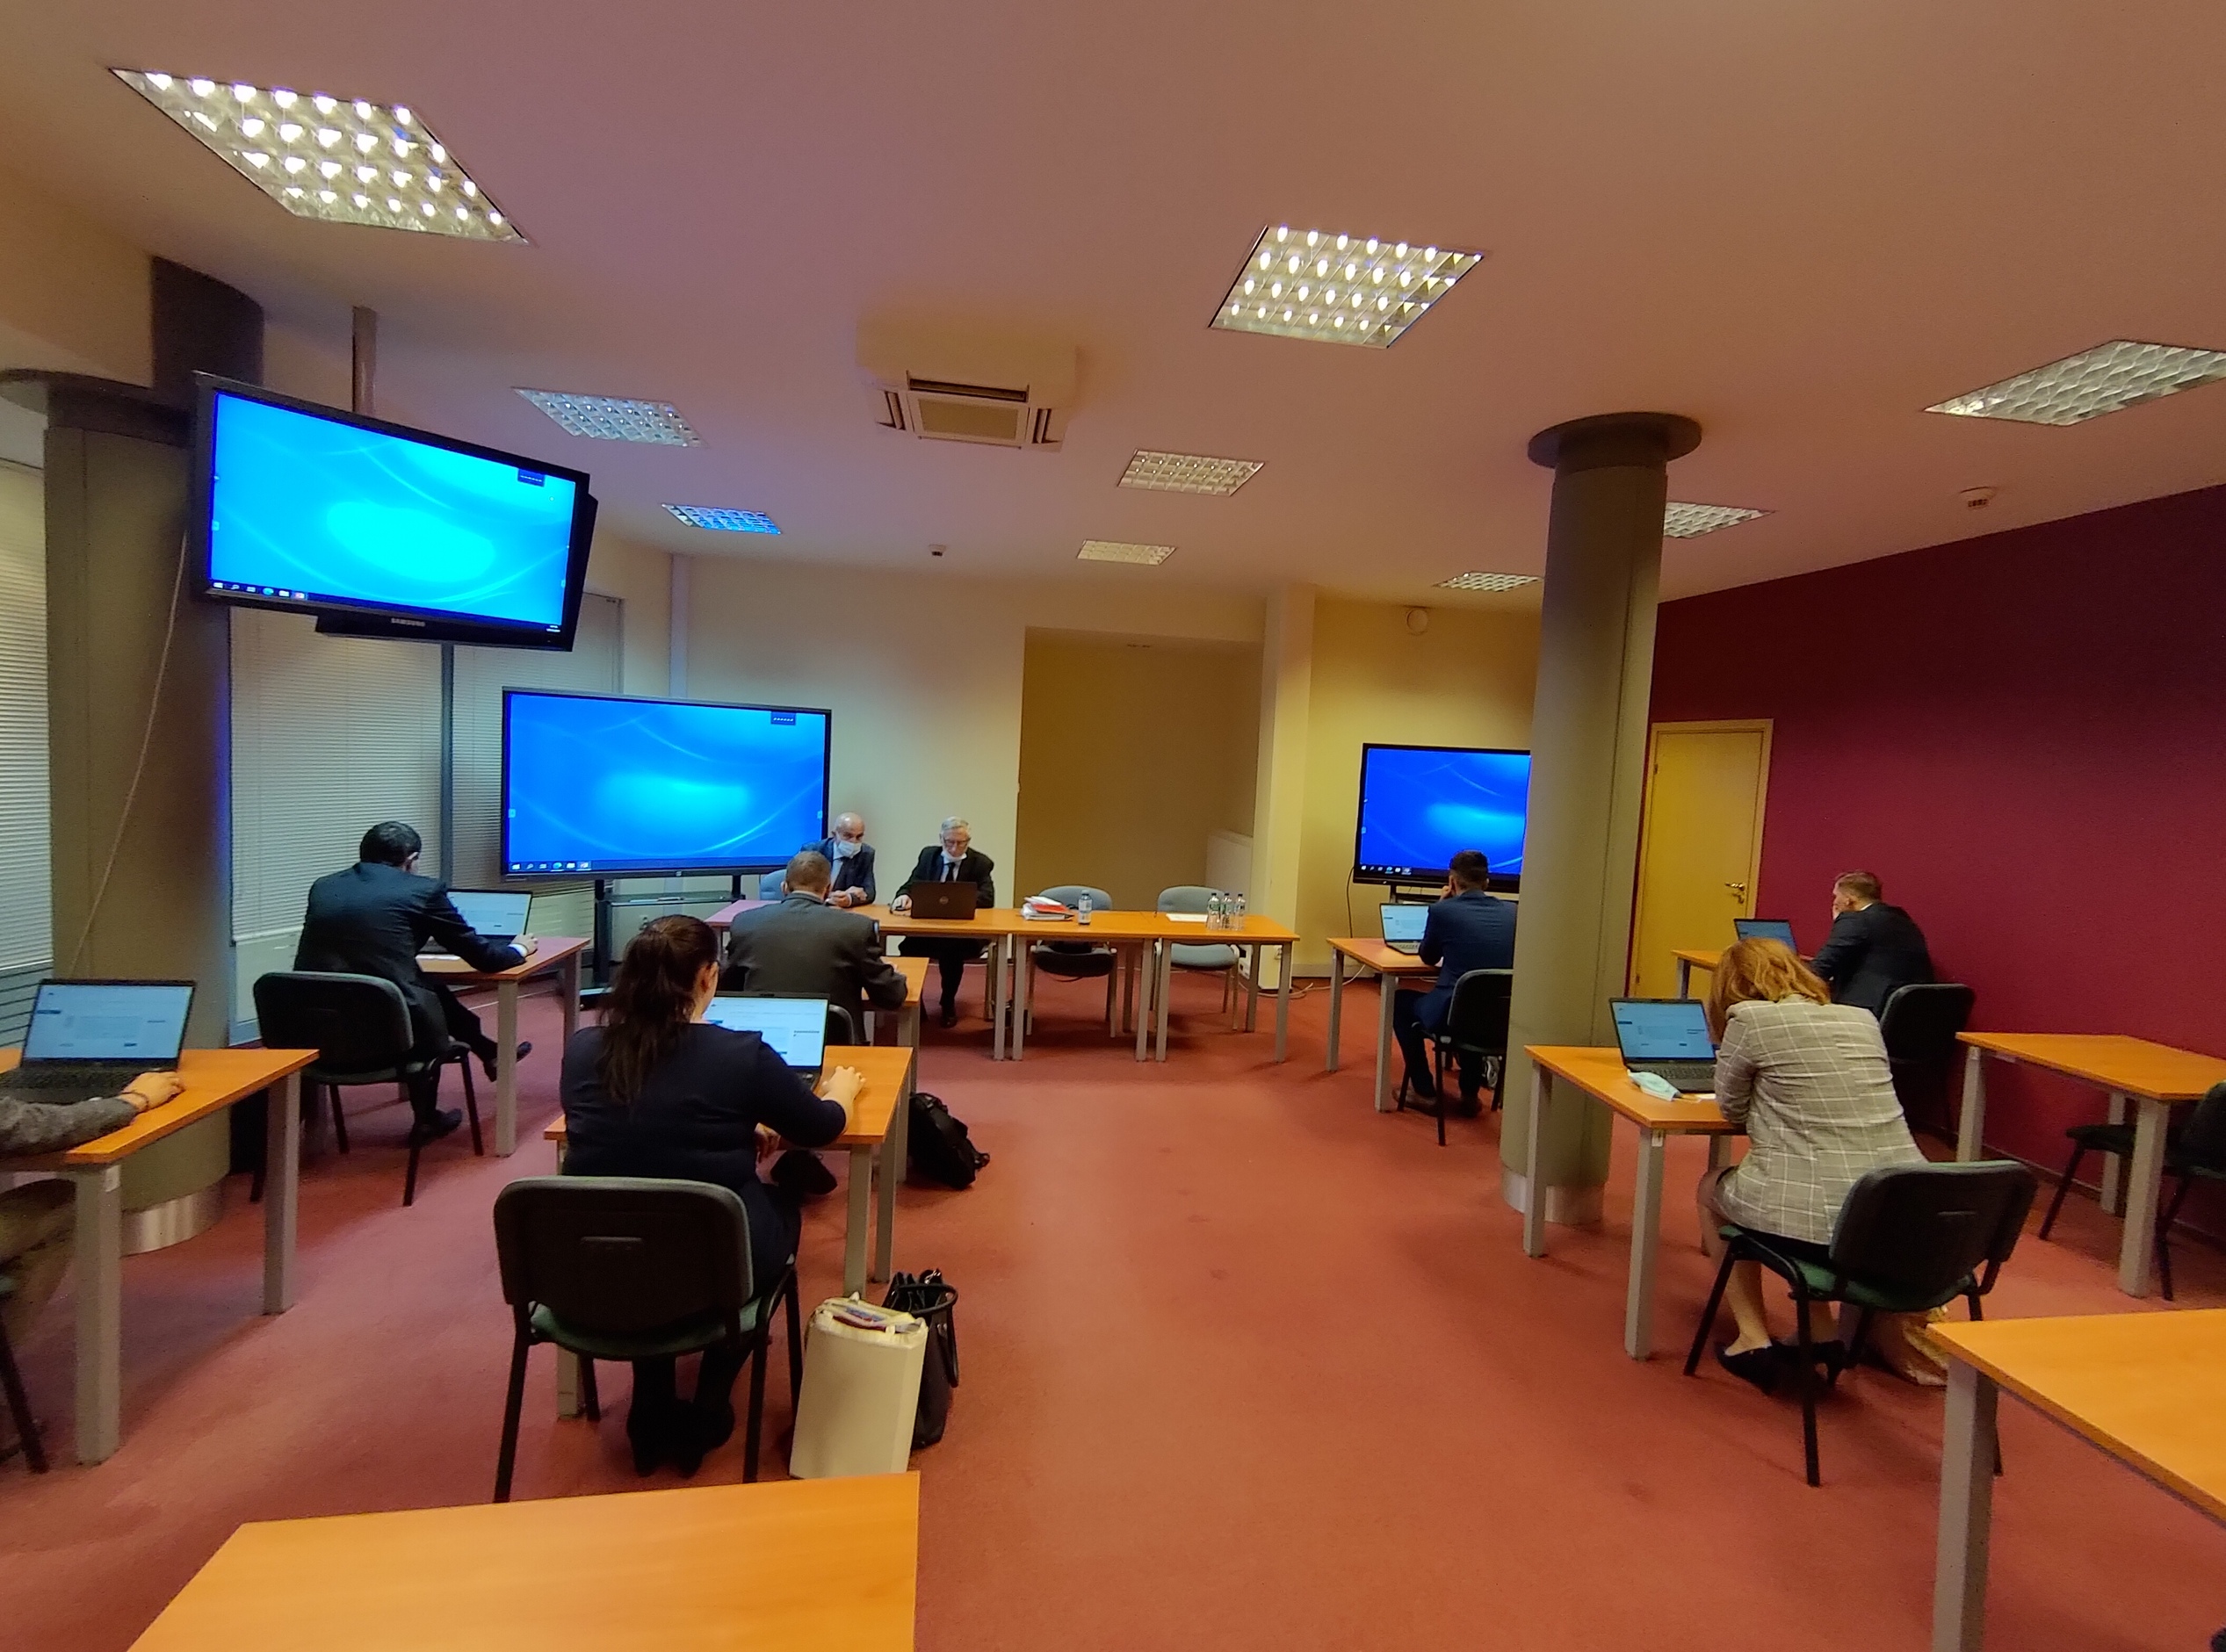 Zdjęcie przedstawia salę egzaminacyjną z z członkami Komisji egzaminacyjnej i osobami przystępującymi do egzaminu siedzącymi pojedynczo przed laptopami.